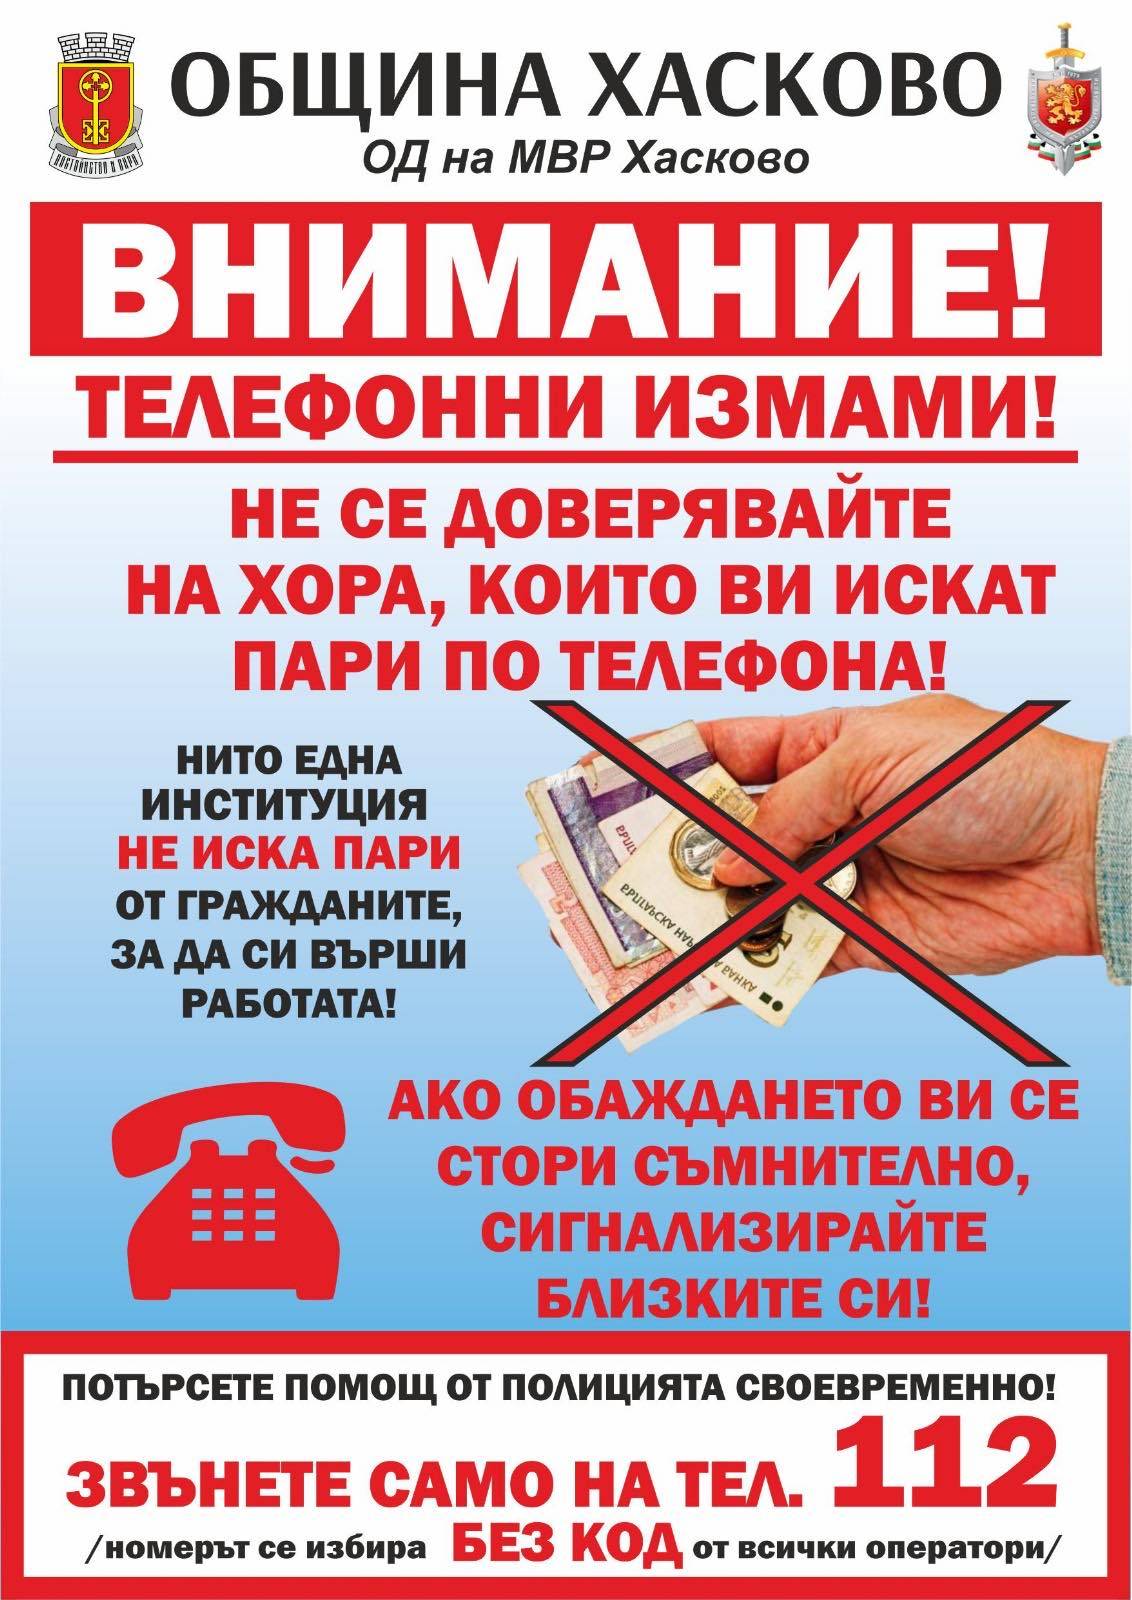 Община Хасково издаде 20 хиляди брошури, съдържащи най-важната информация, която трябва да знаят възрастните хора